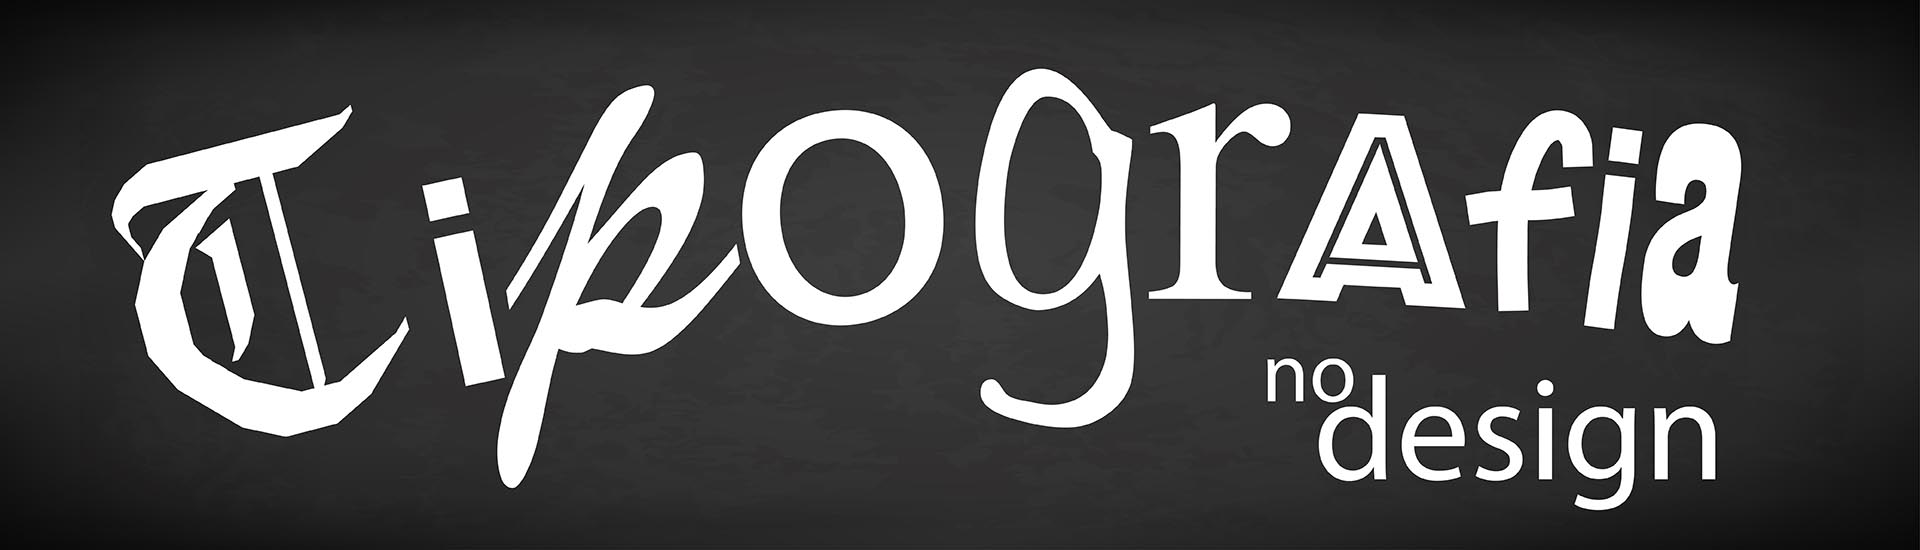 A palavra tipografia escrita com diferentes tipos. Em fonte branca em fundo preto, como se fosse escrito em quadro negro com giz.